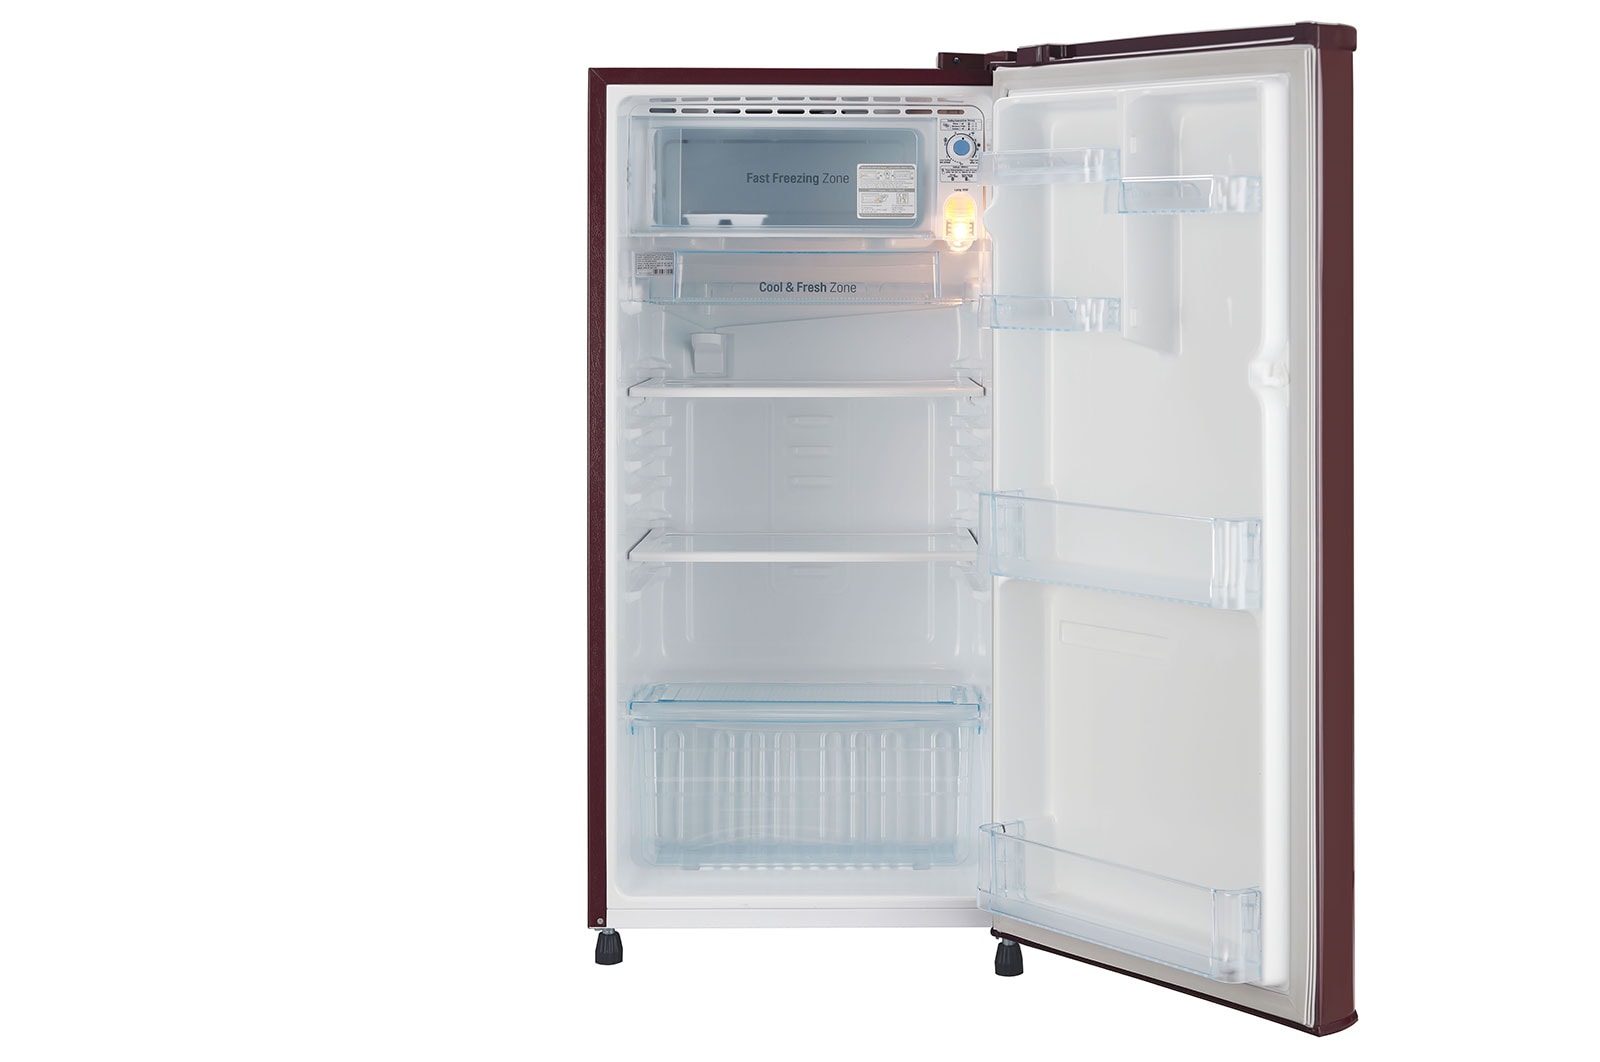 LG 188 L Single Door Refrigerator with Smart Inverter Compressor in Scarlet Dazzle Color GL-B191KSDX